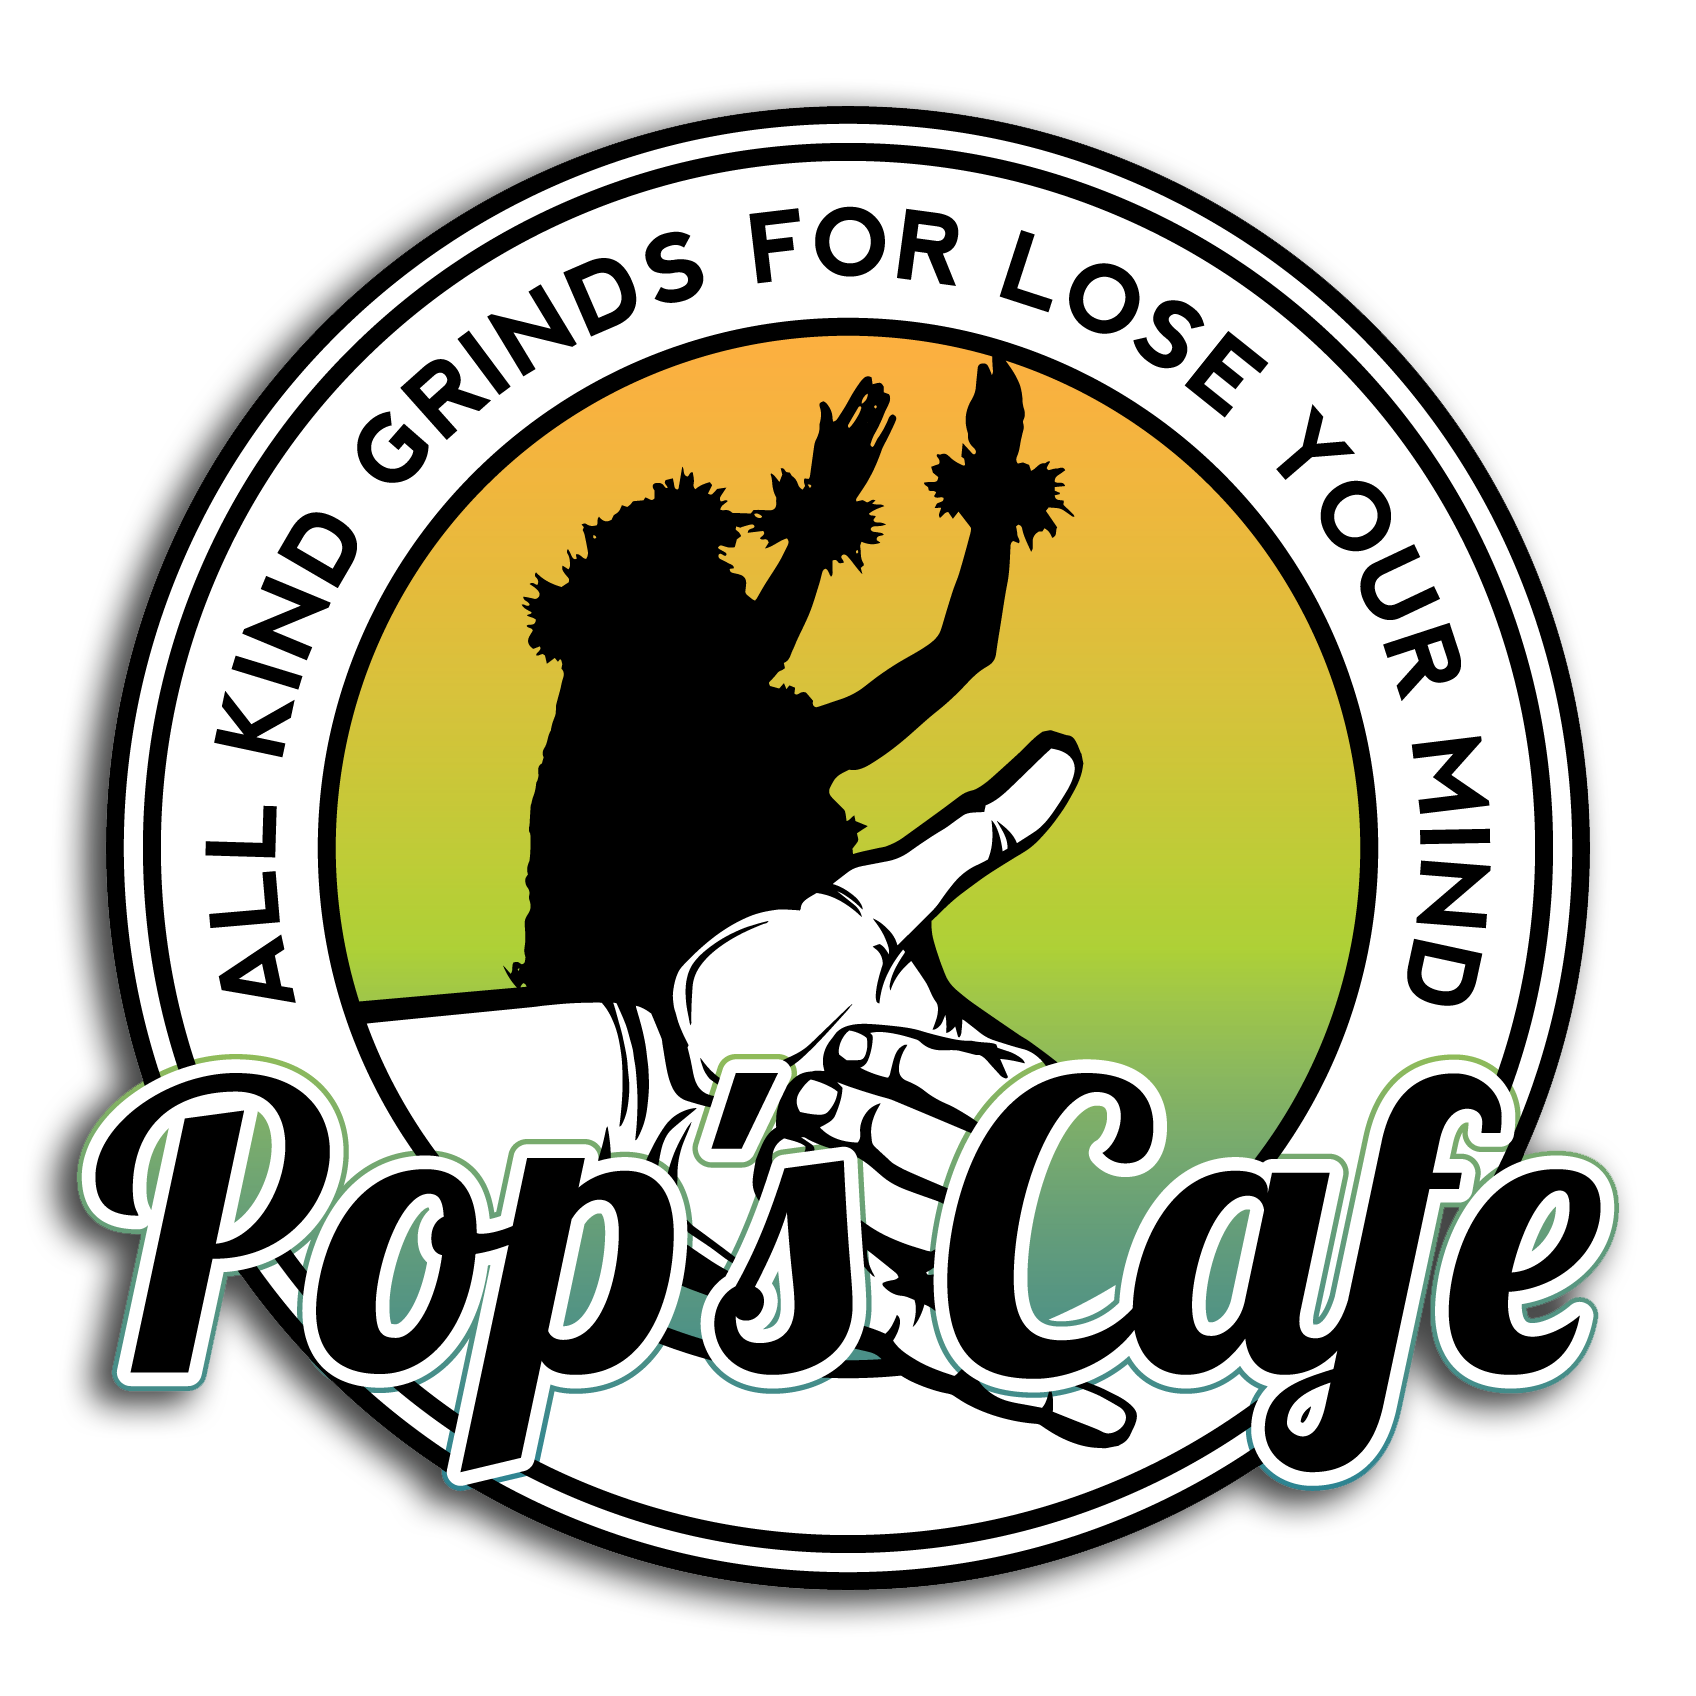 Pops Cafe